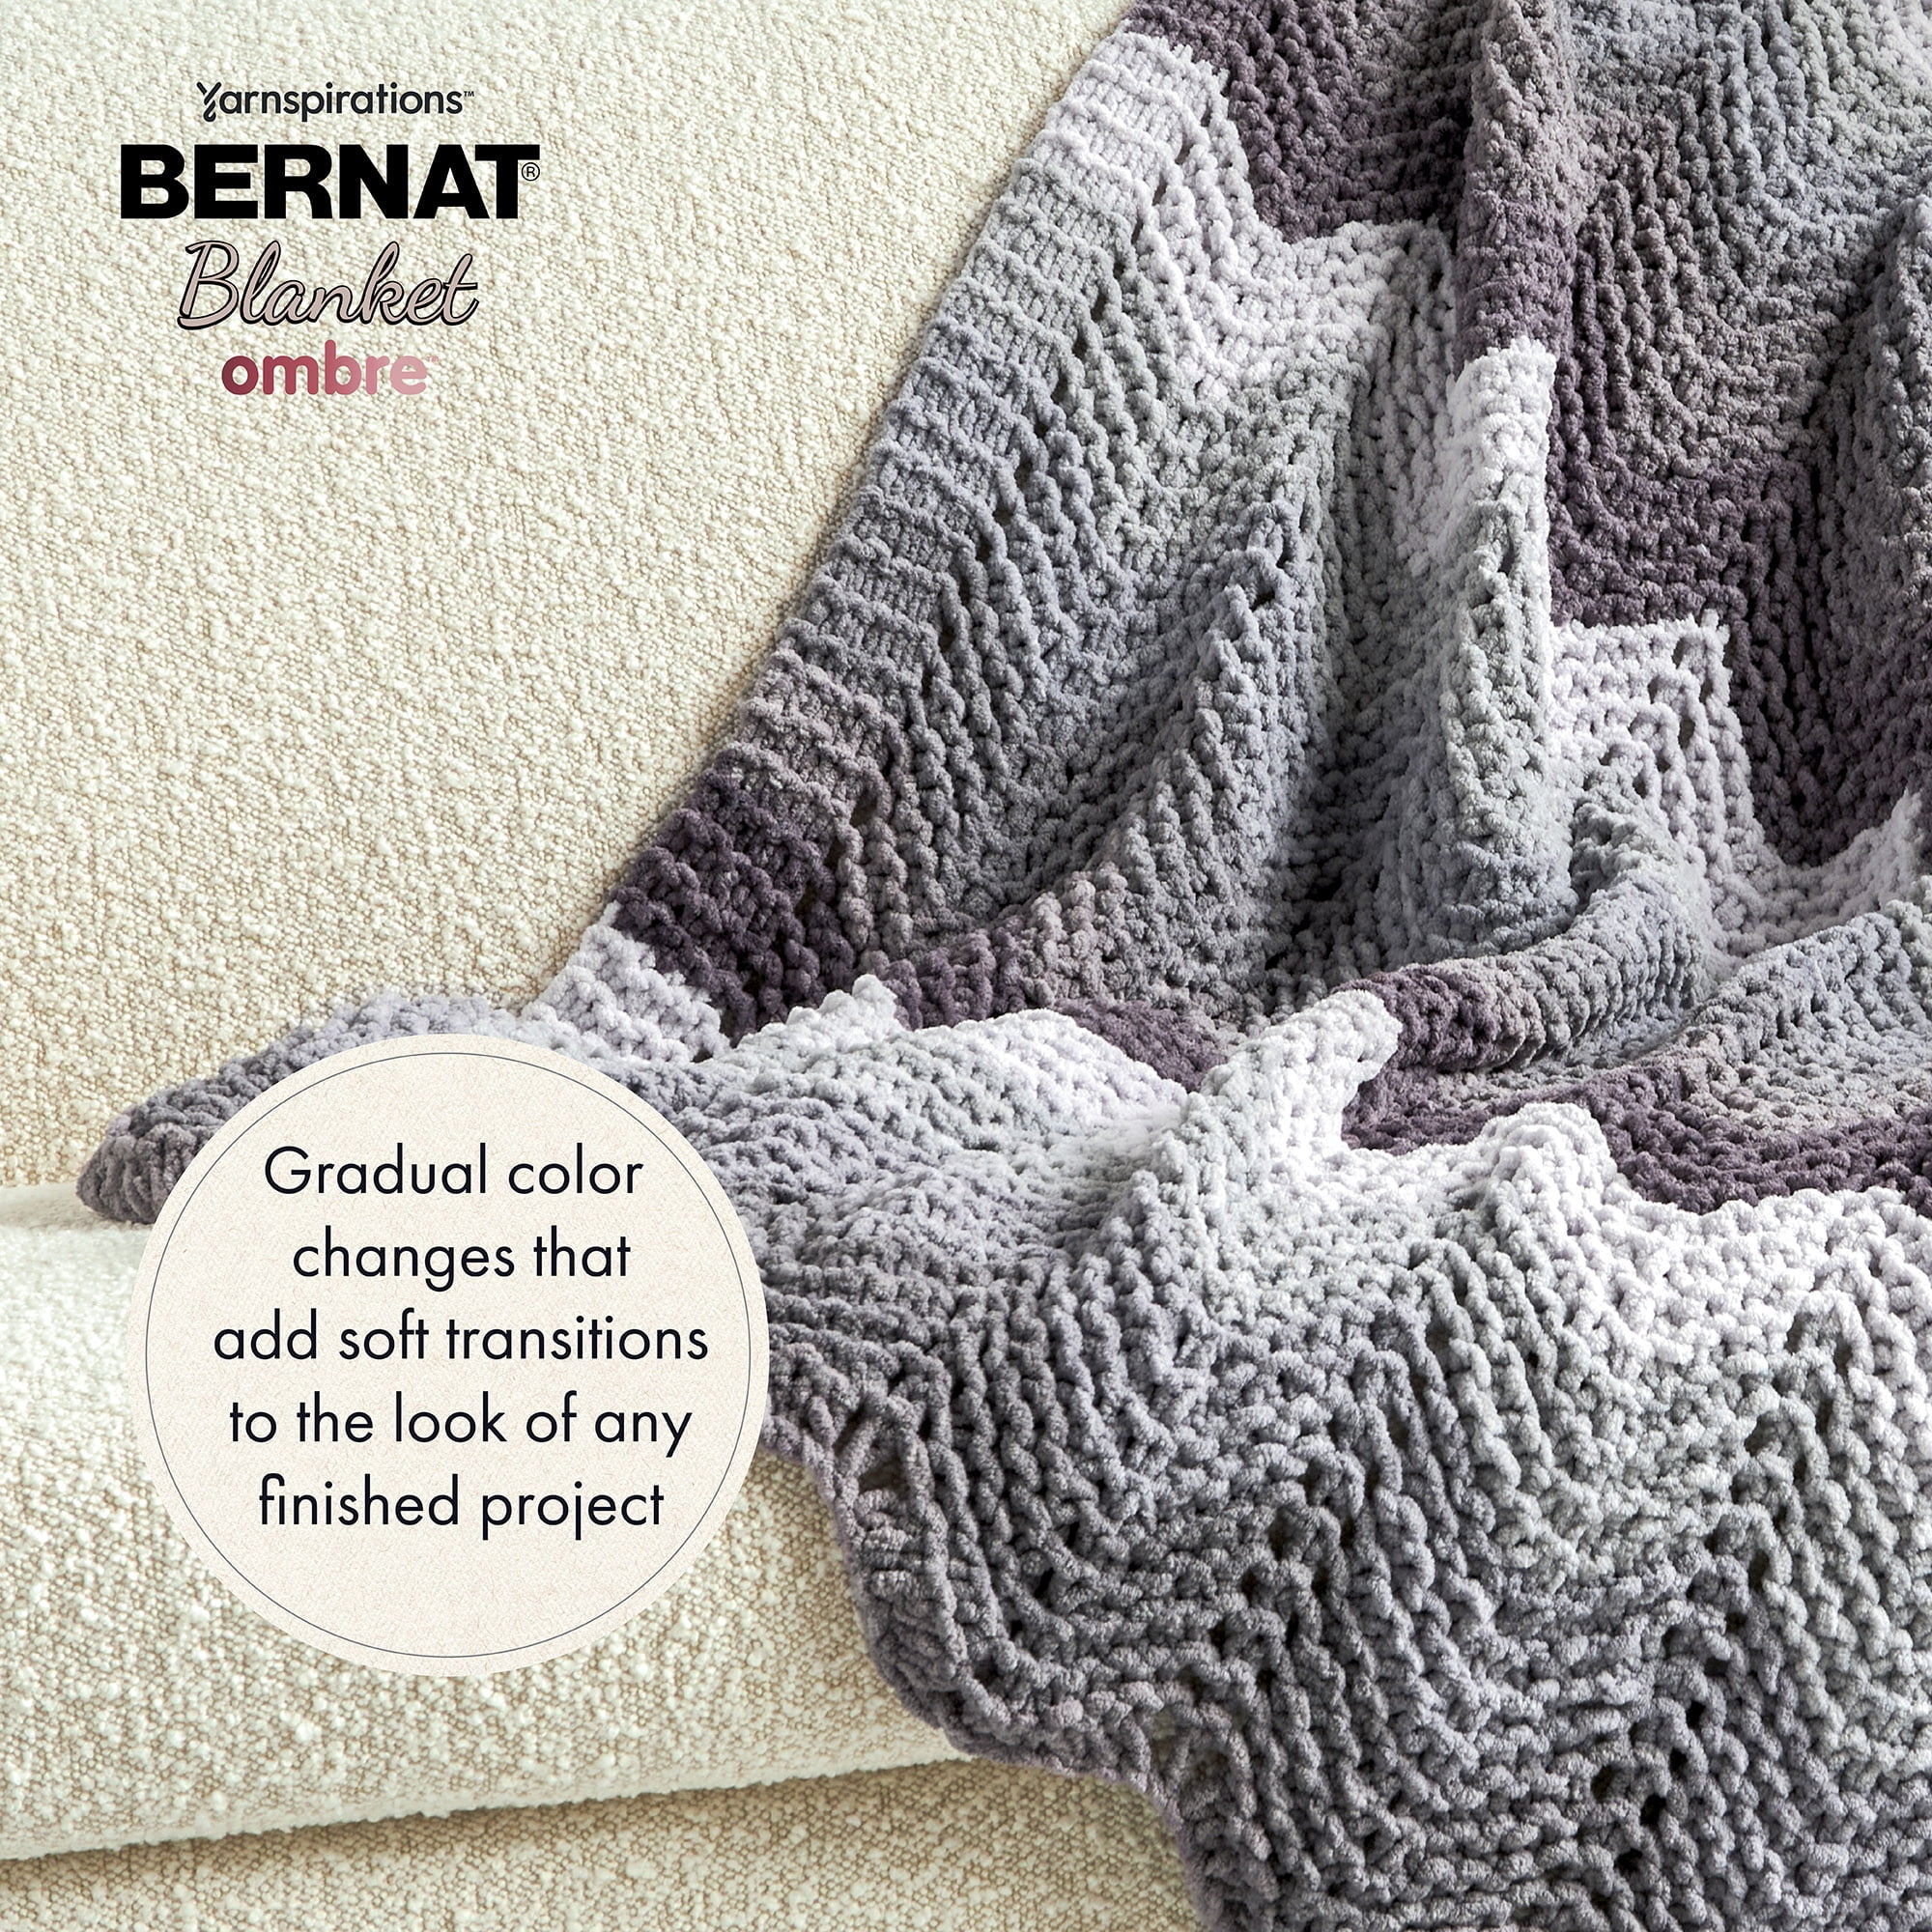 Mejores ofertas e historial de precios de Bernat® Blanket Brights™ #6 Super  Bulky Polyester Yarn, Pixie Pink 10.5oz/300g, 220 Yards en